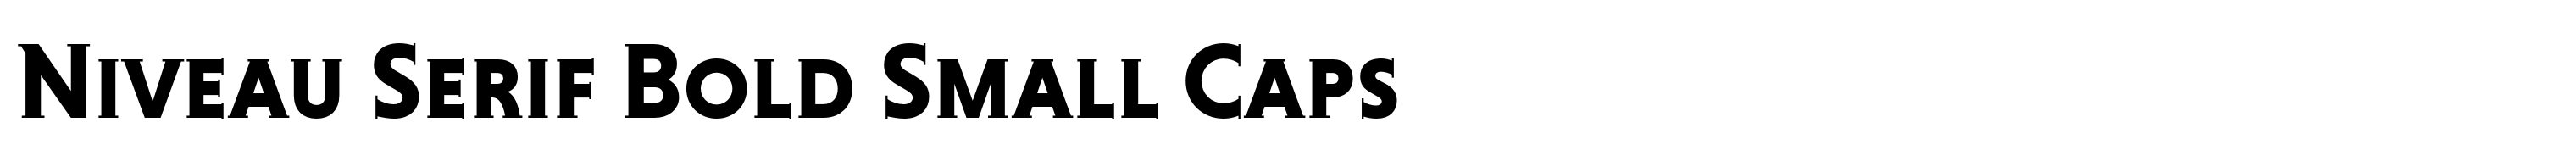 Niveau Serif Bold Small Caps